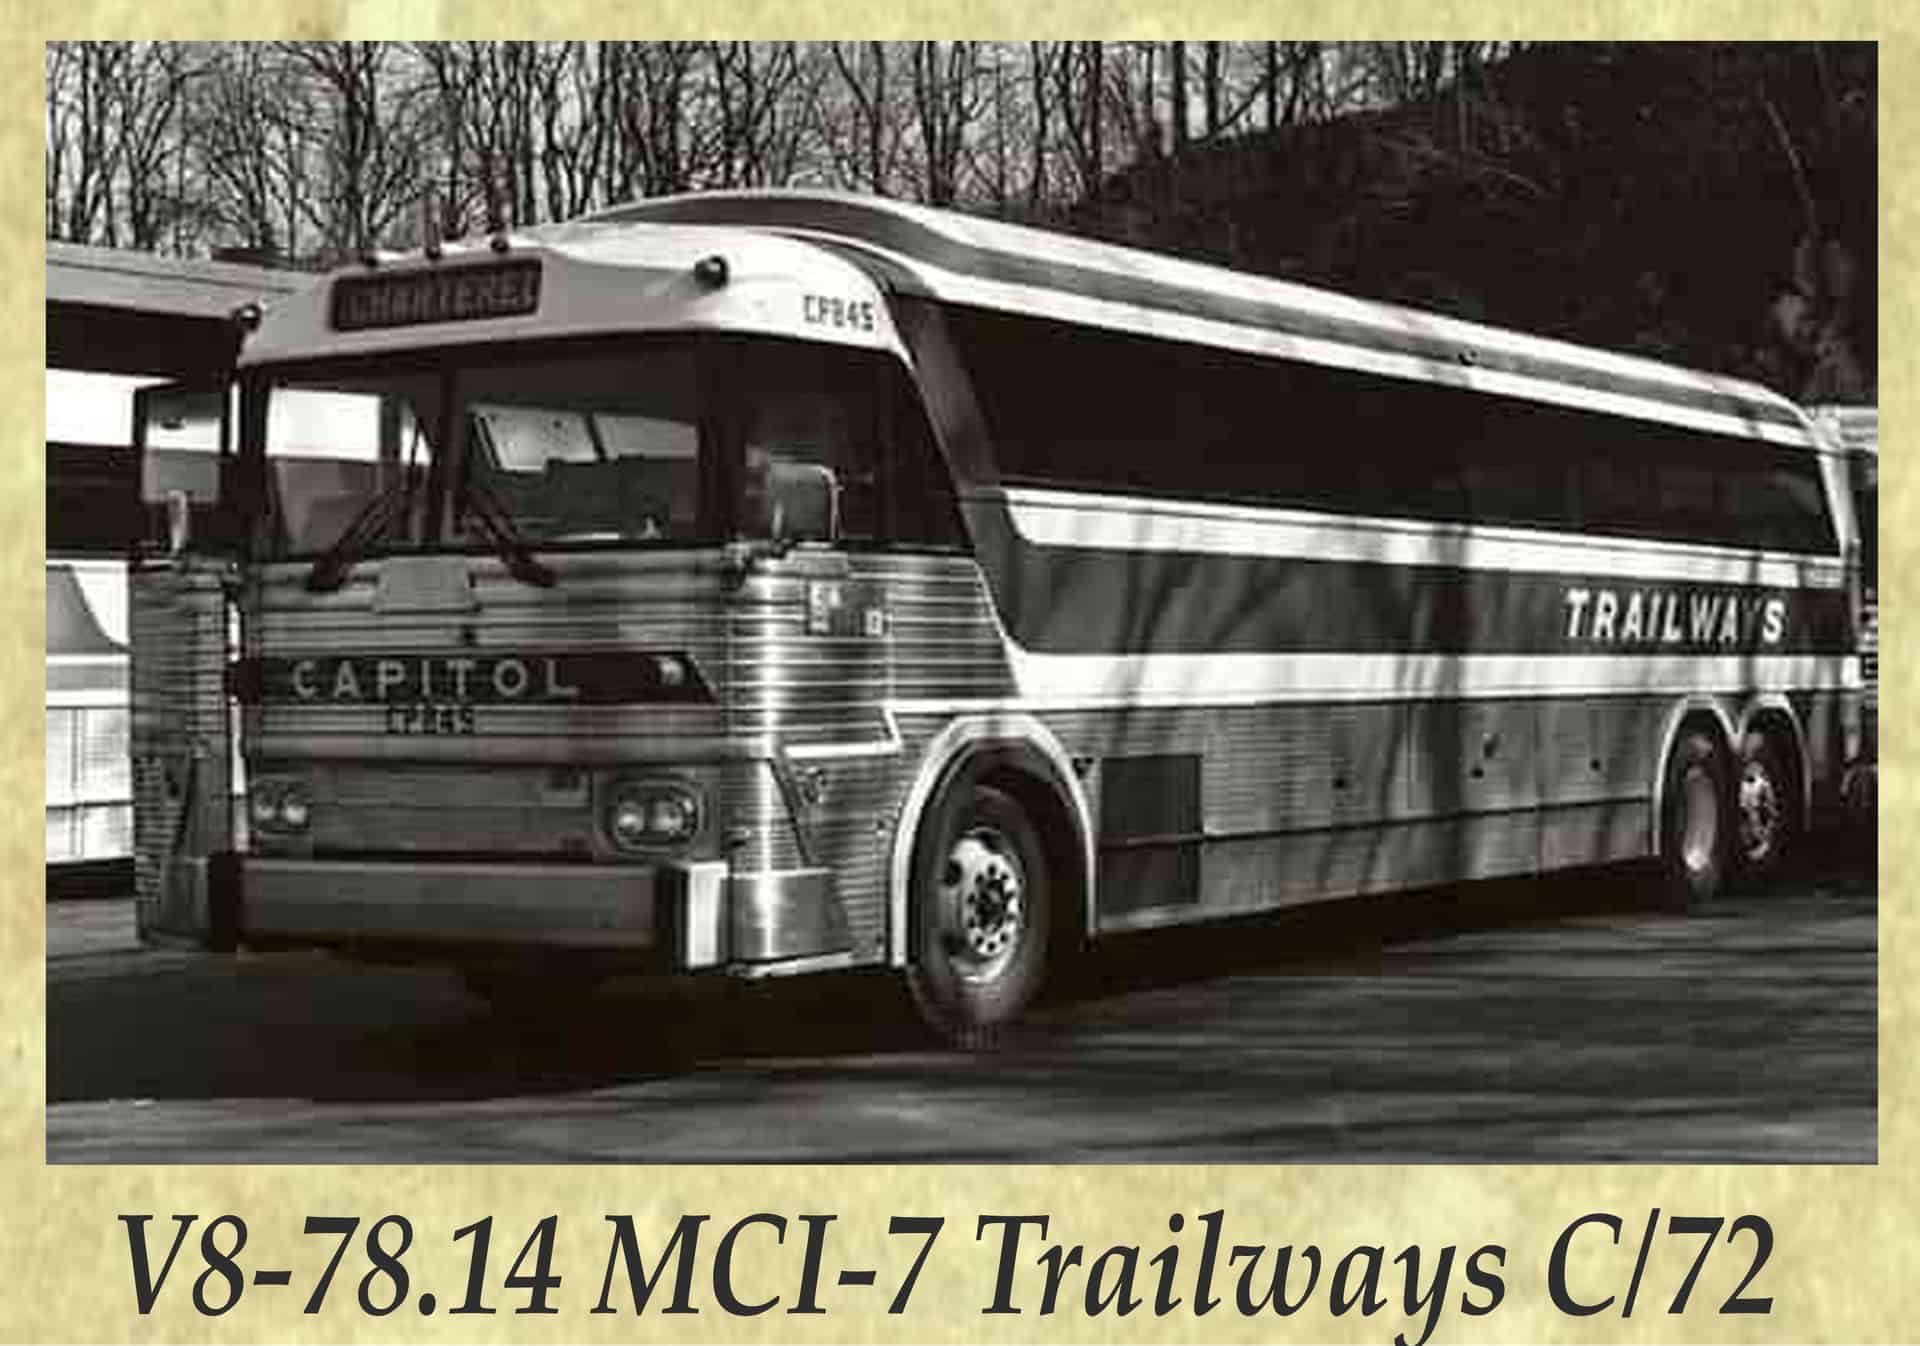 V8-78.14 MCI-7 Trailways C 72